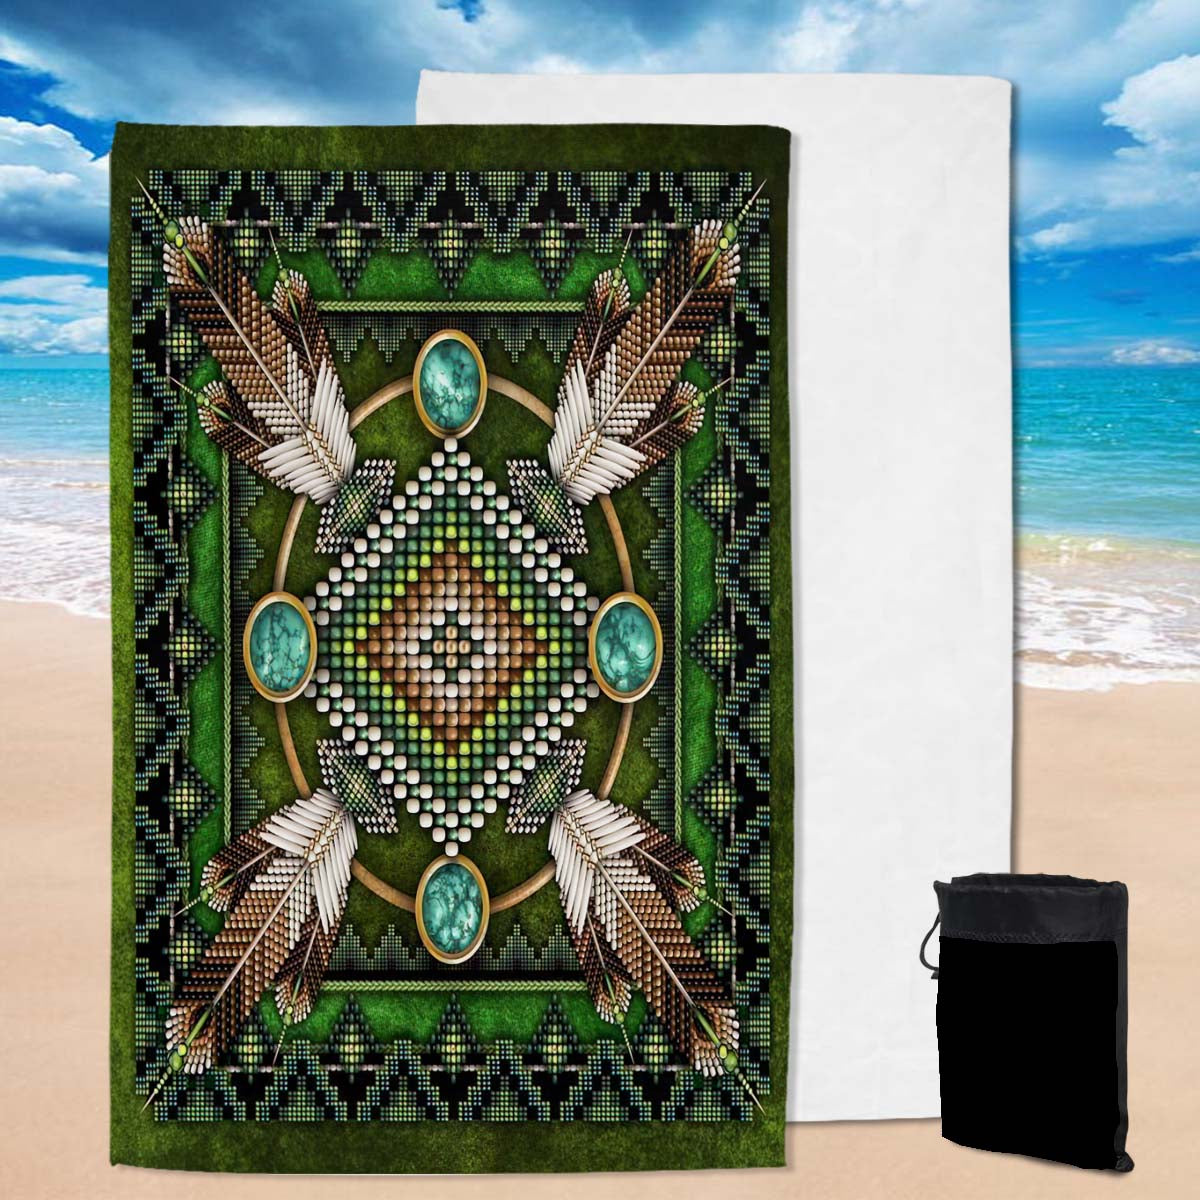 Powwow Store gb nat00023 01 naumaddic arts green native american pool beach towel